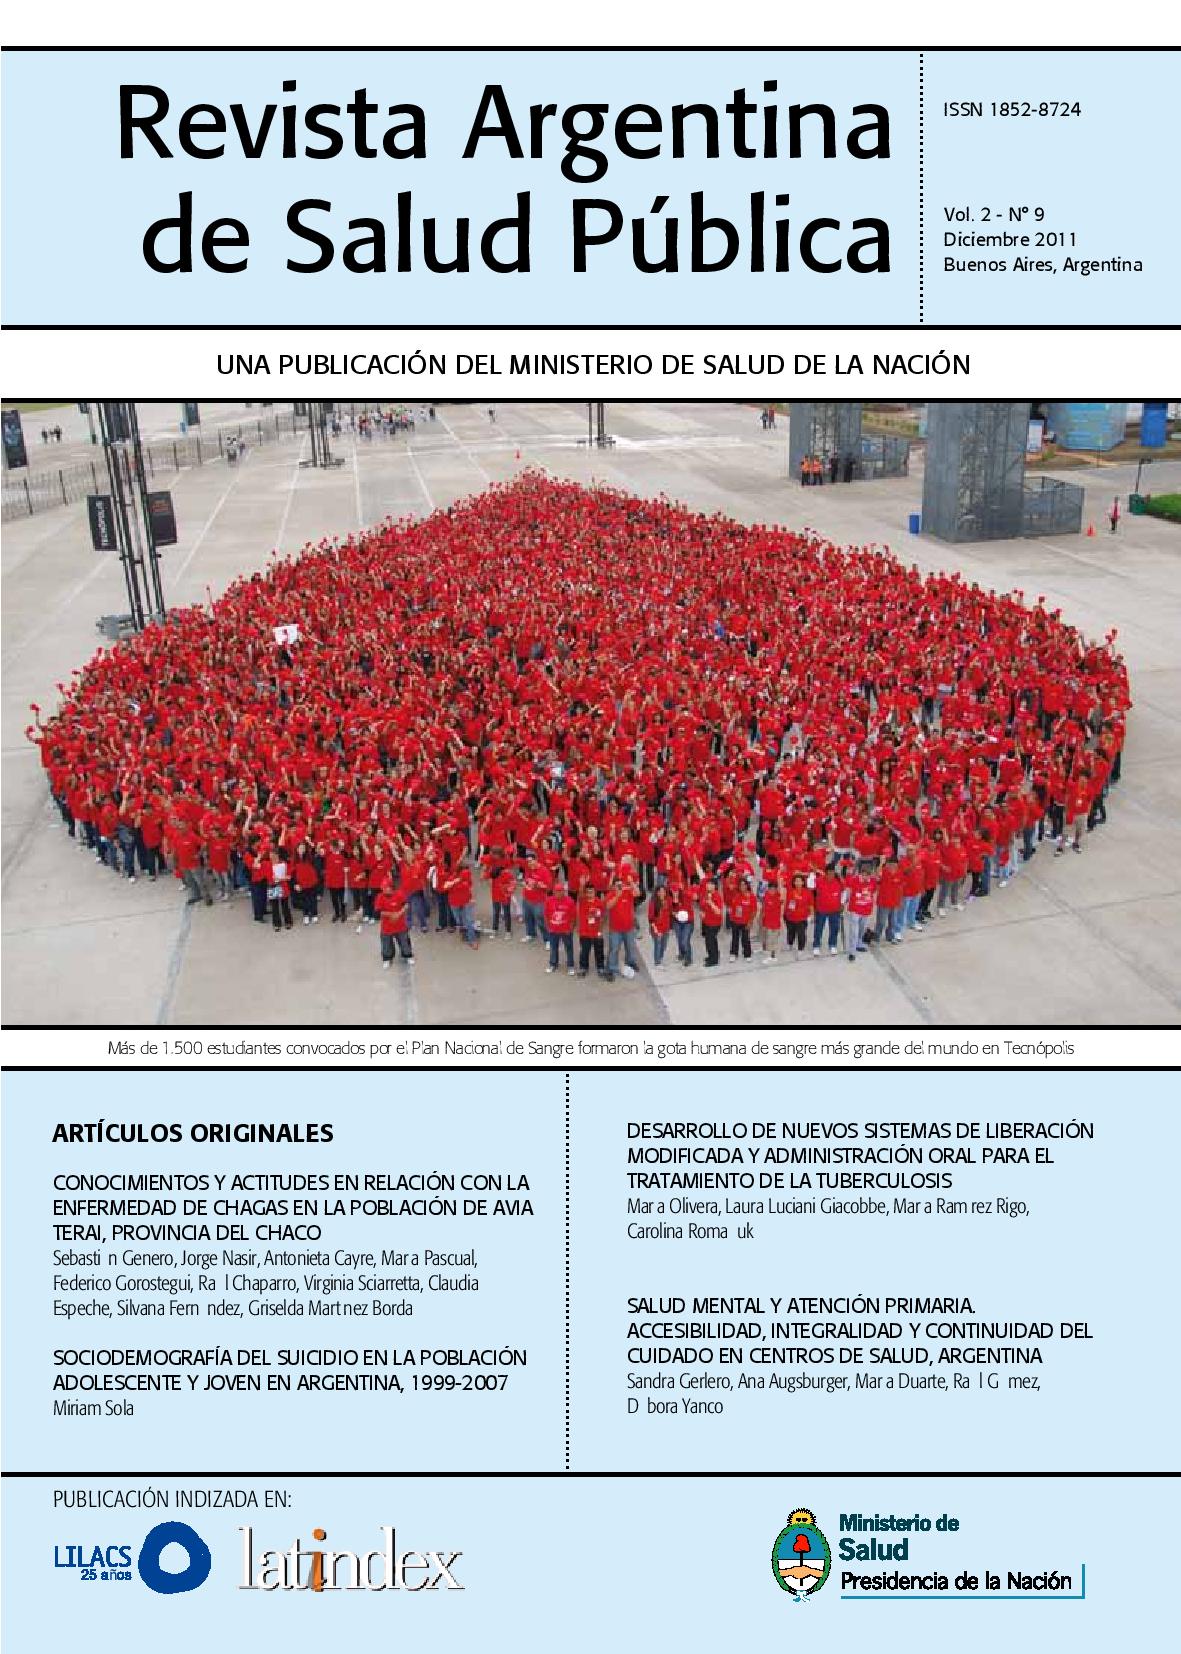 					Ver Vol. 2 Núm. 9 (2011): Revista Argentina de Salud Pública
				